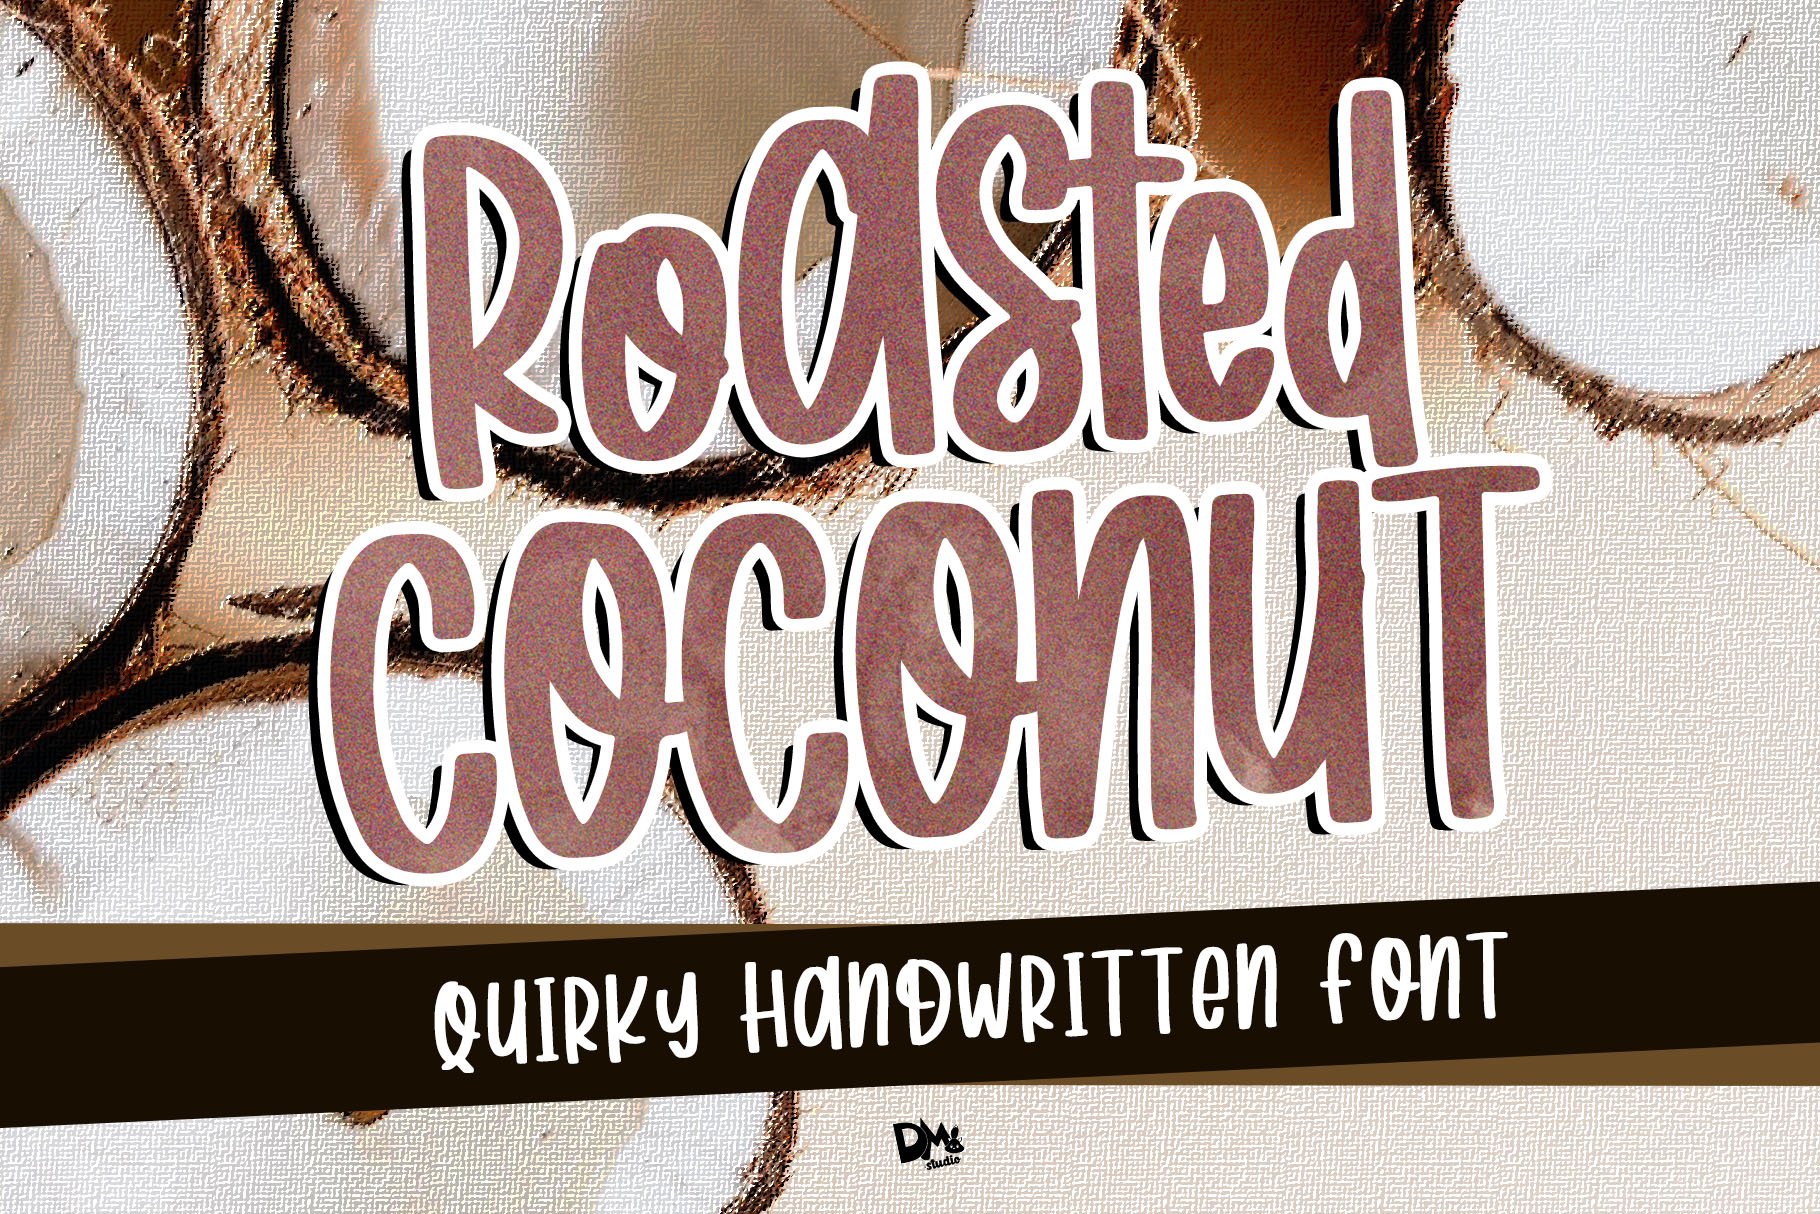 Roasted Coconut - Handwritten Font